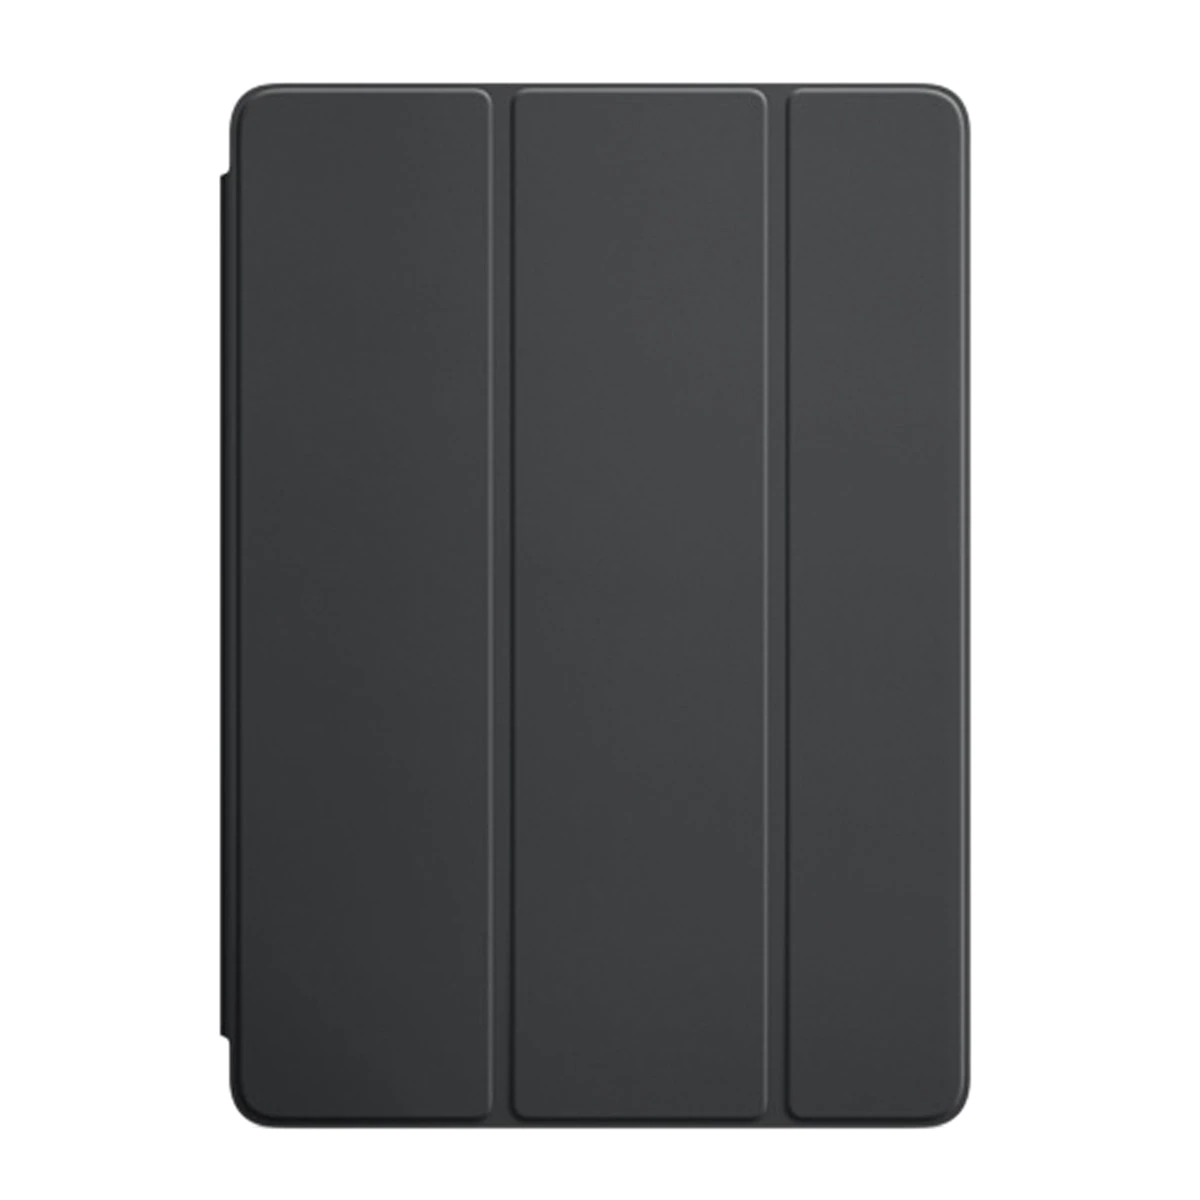 Funda Apple Smart Cover para iPad y iPad Air 2 gris carbón